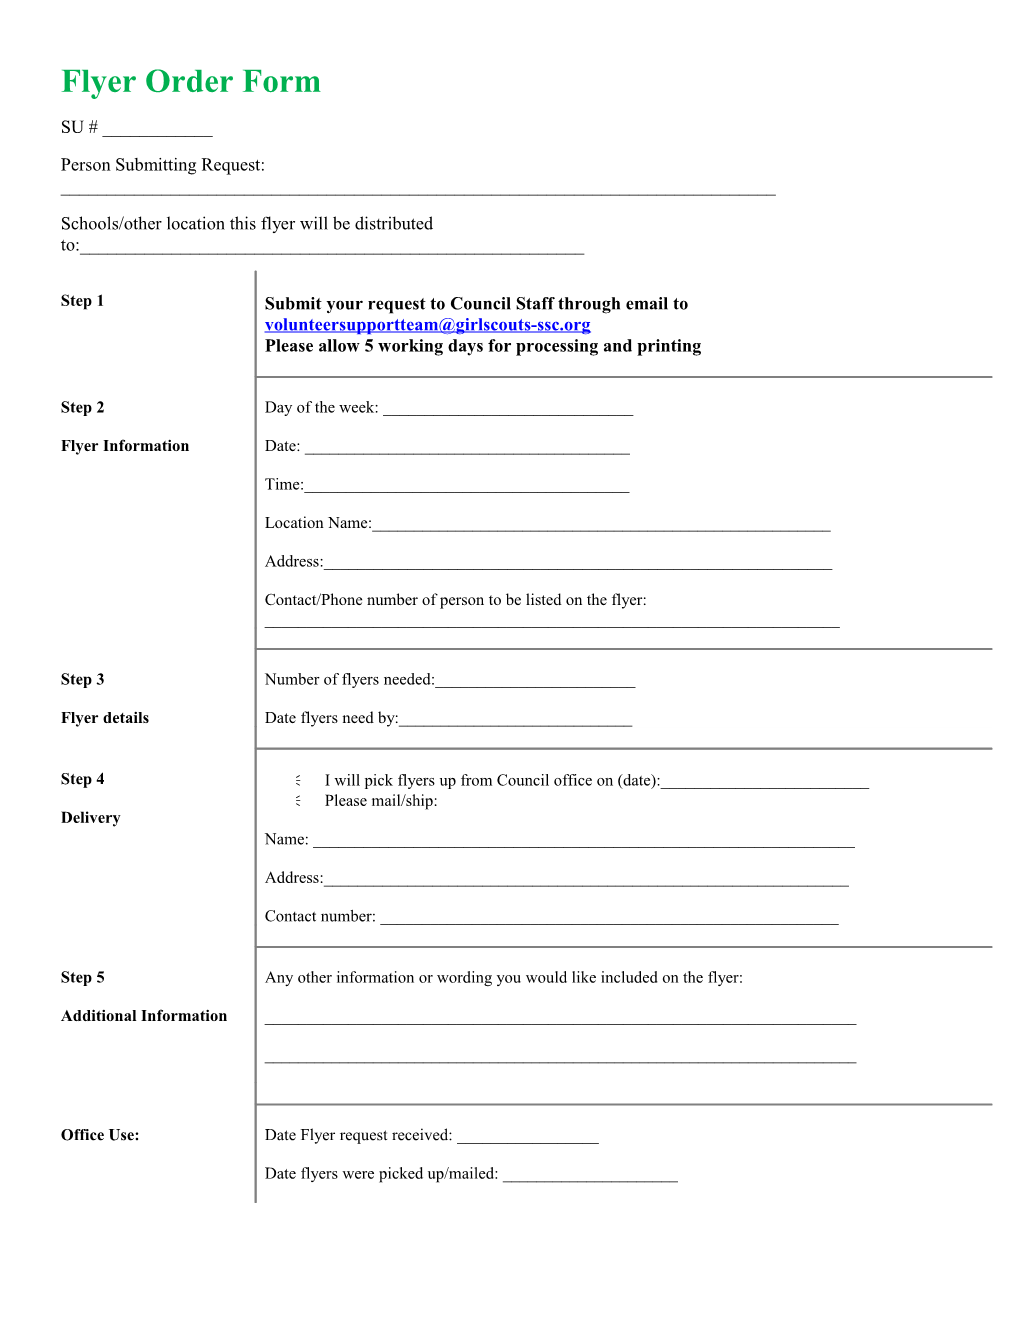 Flyer Order Form